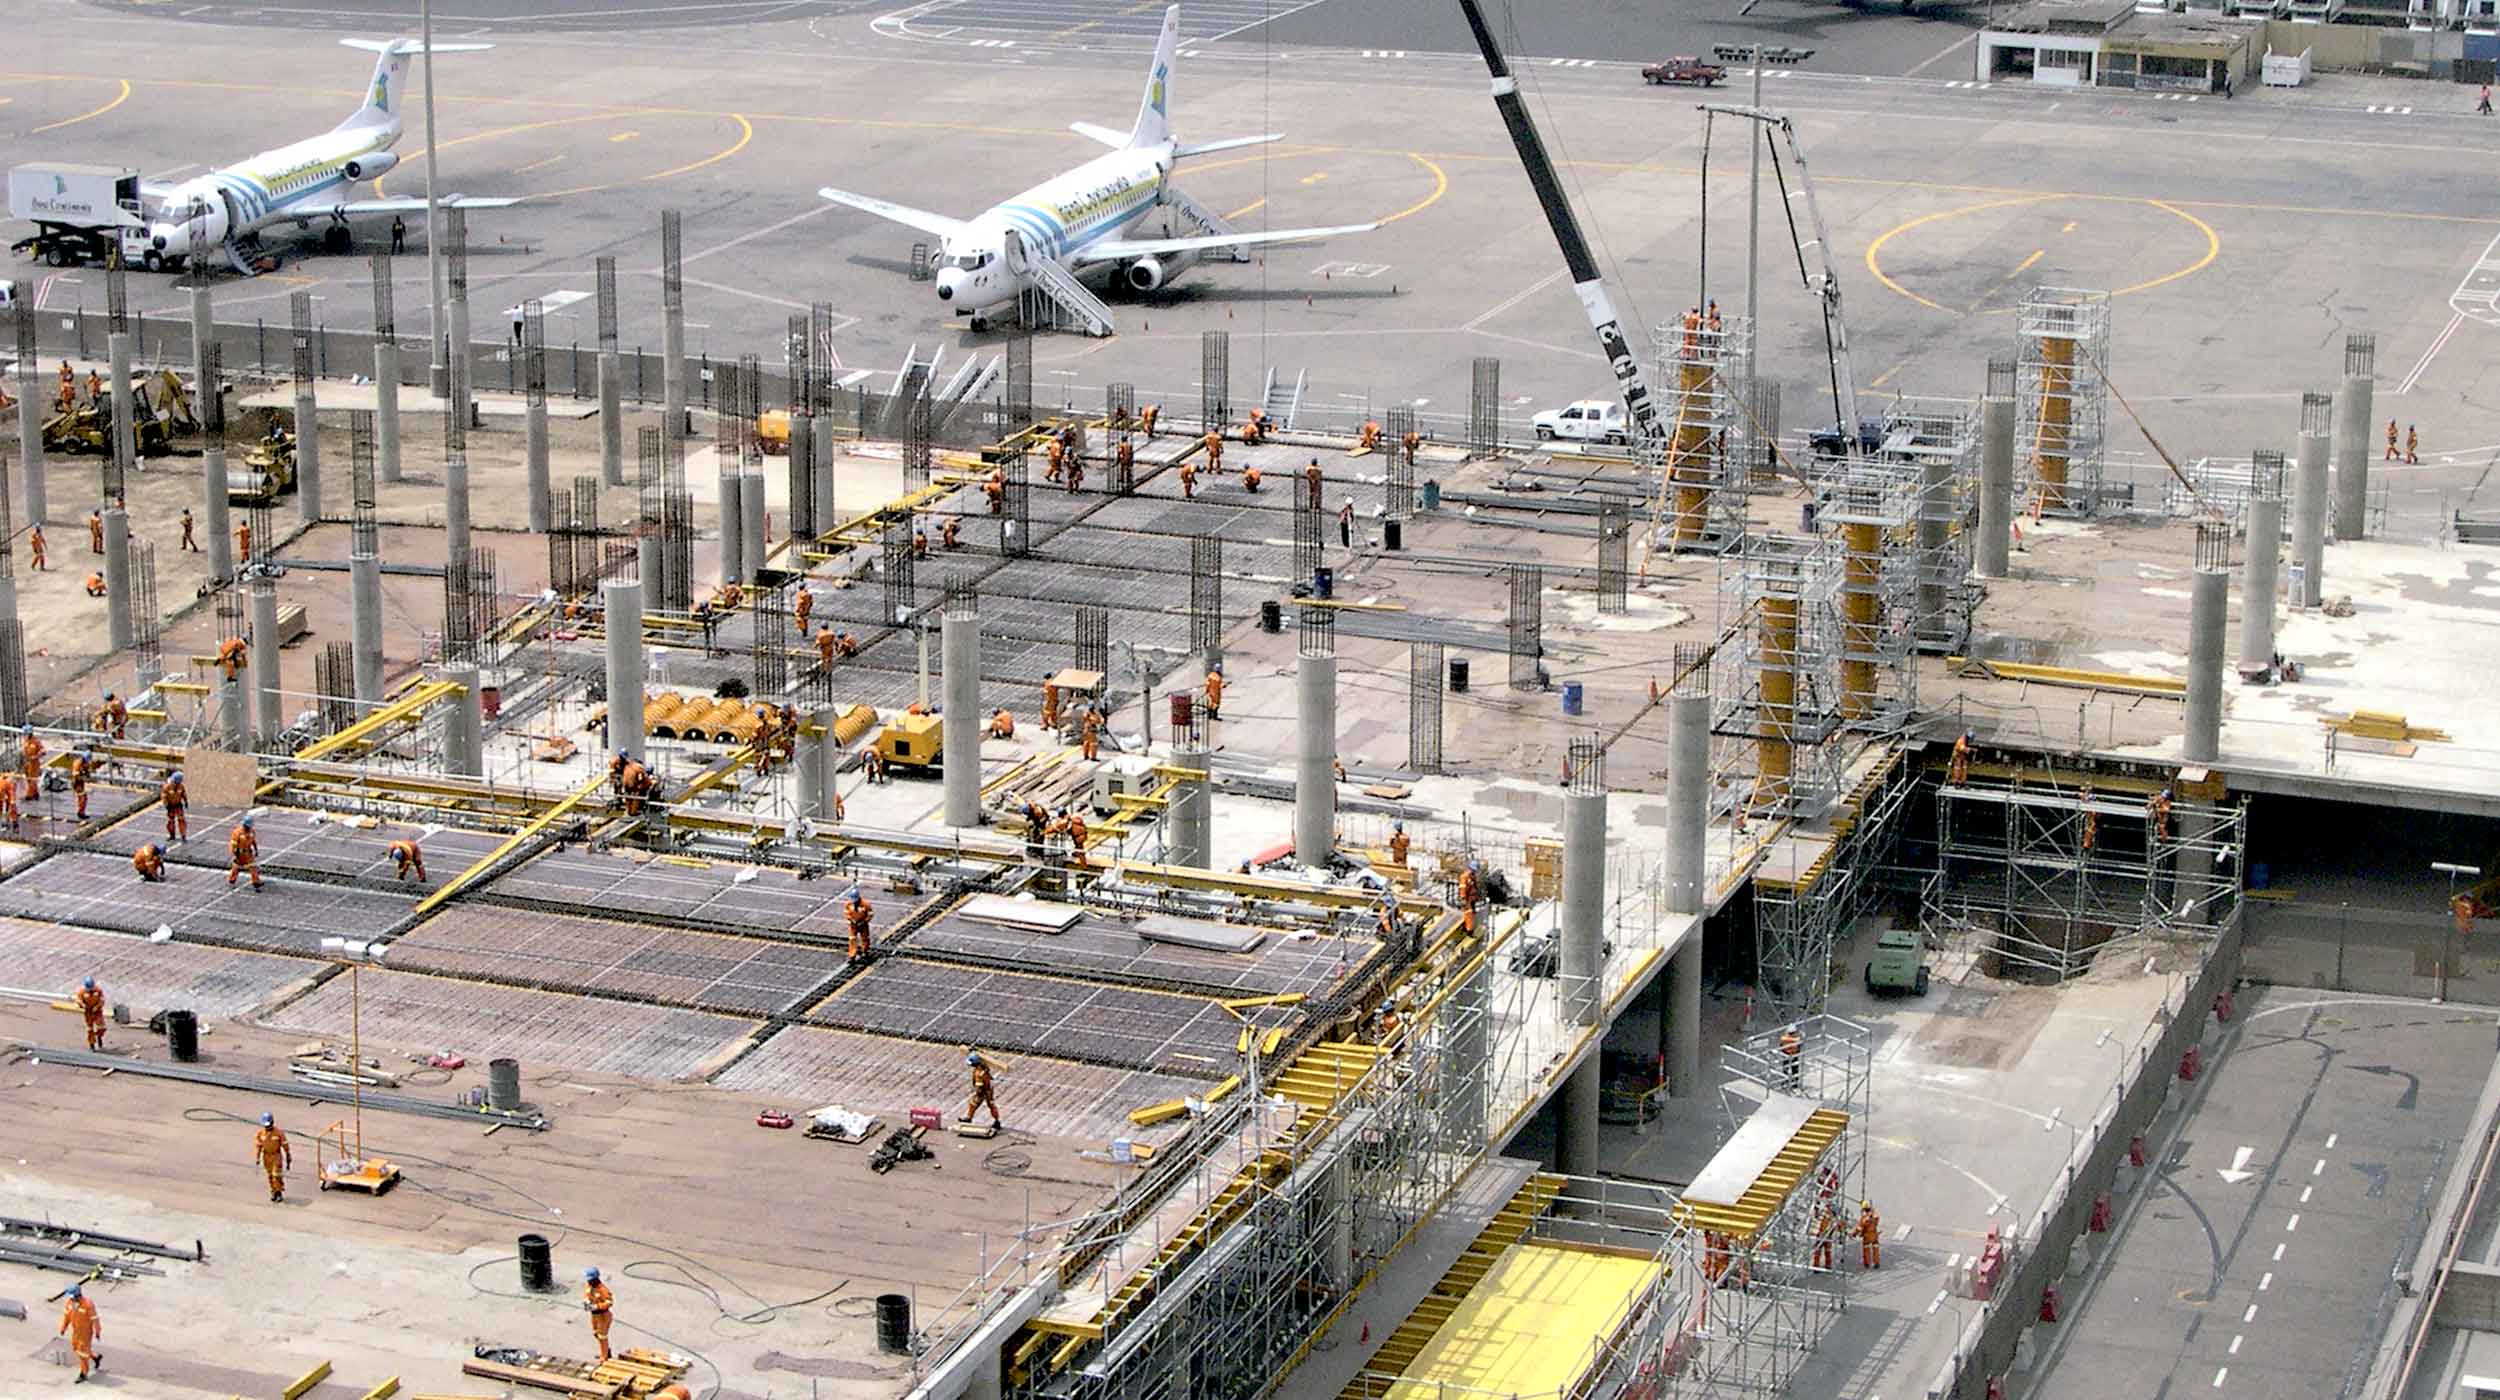 Lotnisko im. Jorge Chaveza to główny port lotniczy w kraju, obsługujący większość międzynarodowego i krajowego ruchu lotniczego Peru.